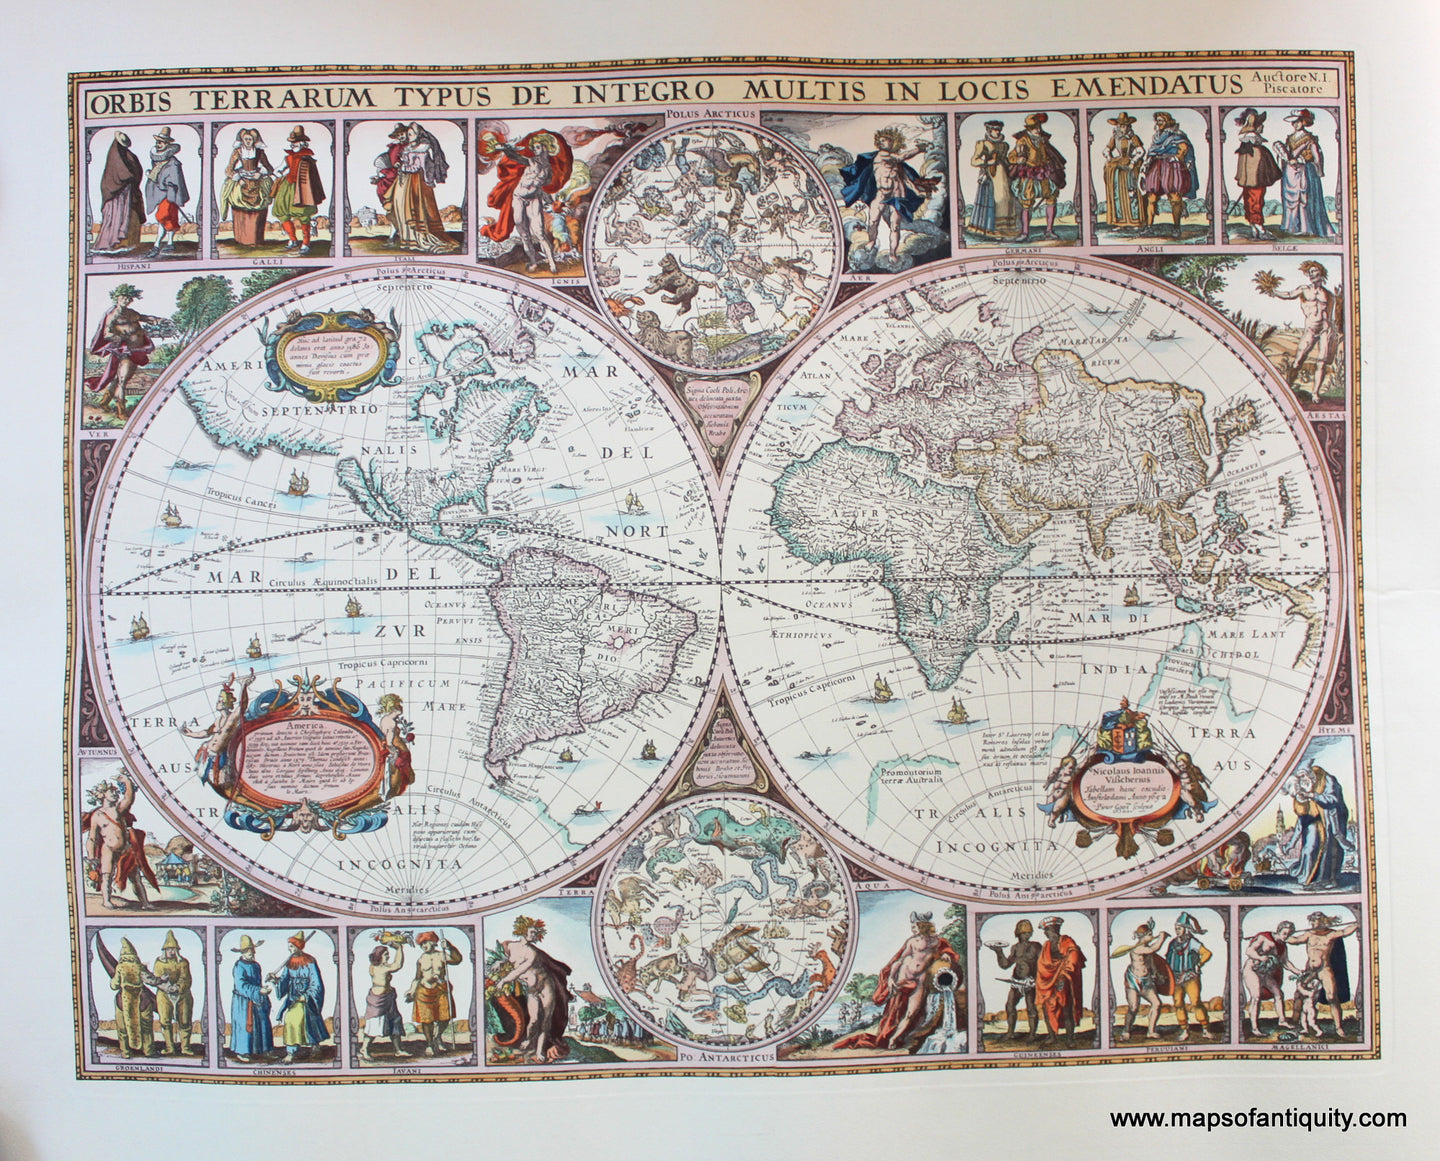 Reproduction-Reproductions-Antique-Map-of-World-Globe-Hemispheres-Orbis-Terrarum-Typus-de-Integro-Multis-in-Locis-Emendatus-Visscher-Maps-of-Antiquity